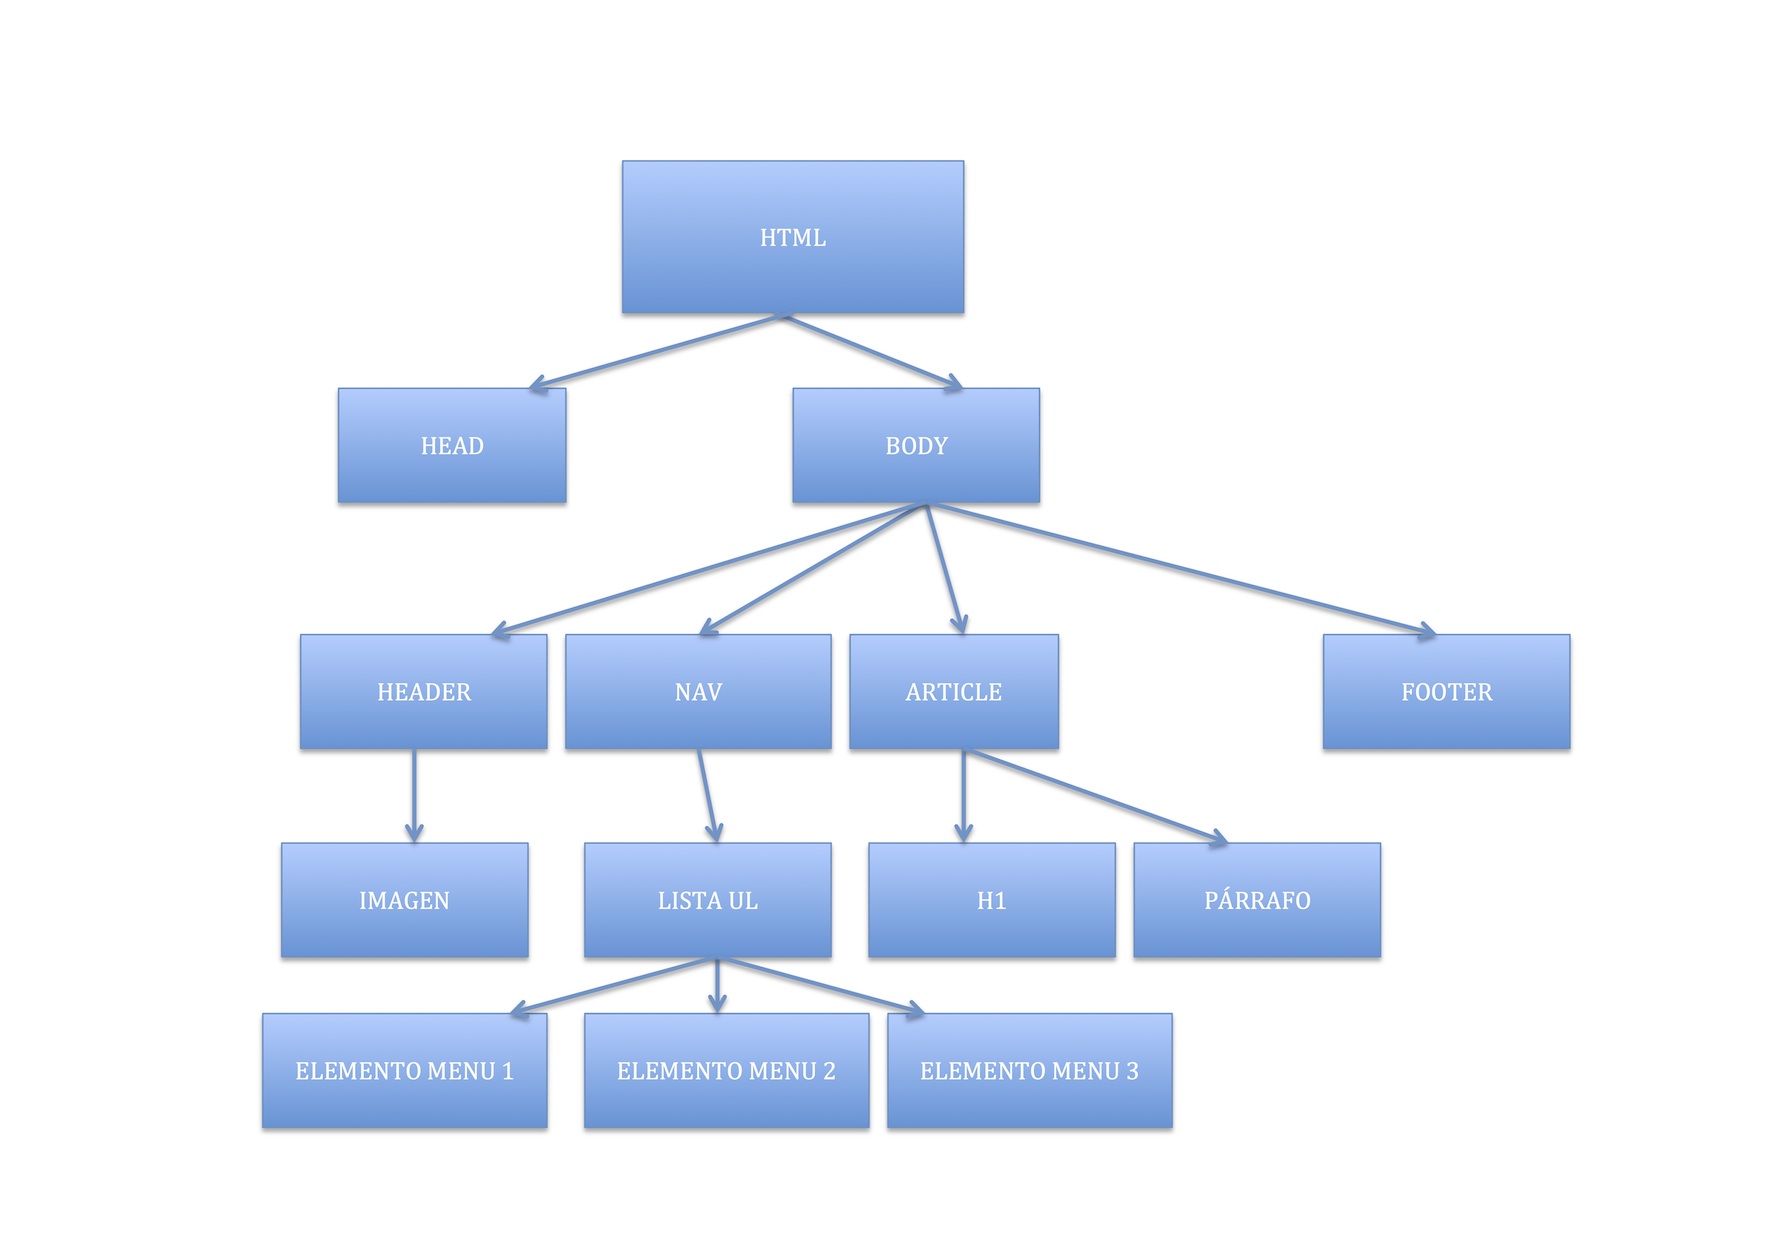 muestra en forma de árbol, las partes del código html: head, body con nav, header, article, footer...